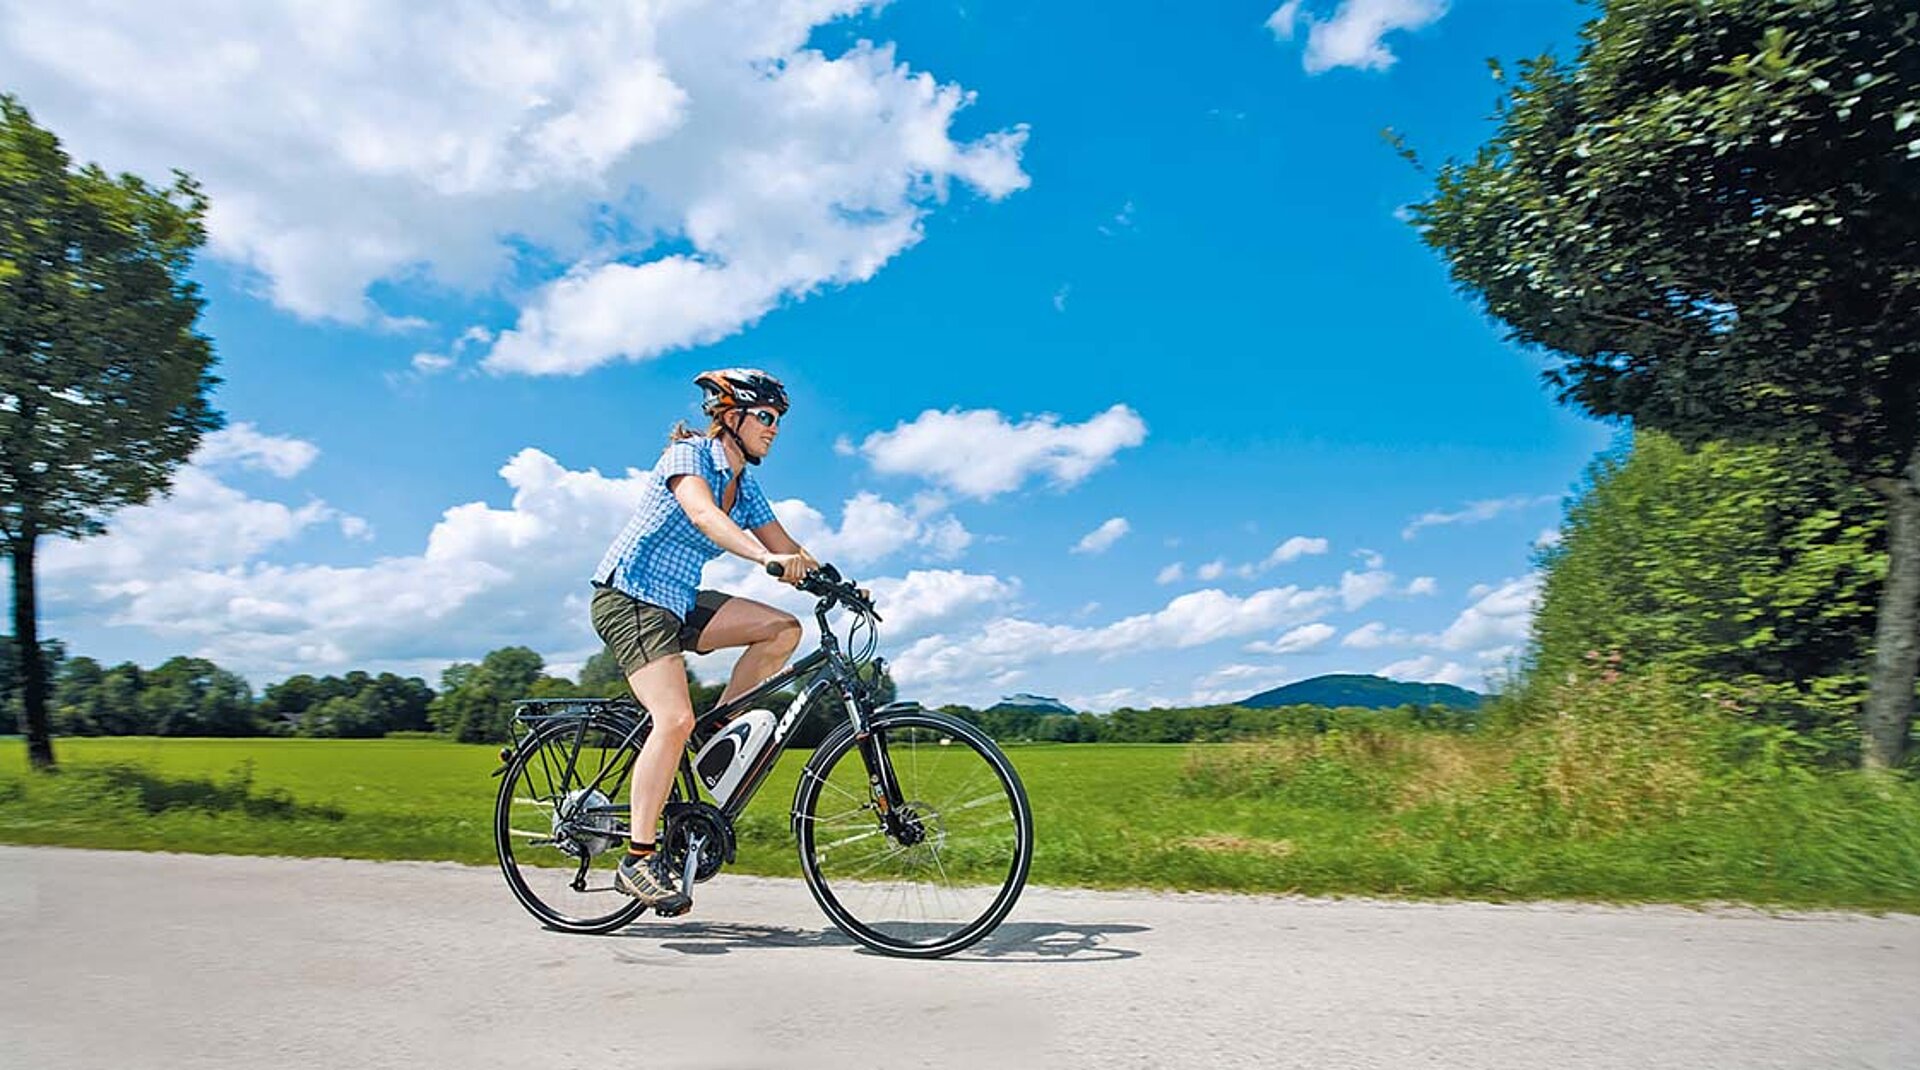 Eine junge Frau genießt die Fahrt mit dem E-Bike. Über ihr der bayerische Himmel weiß und blau.